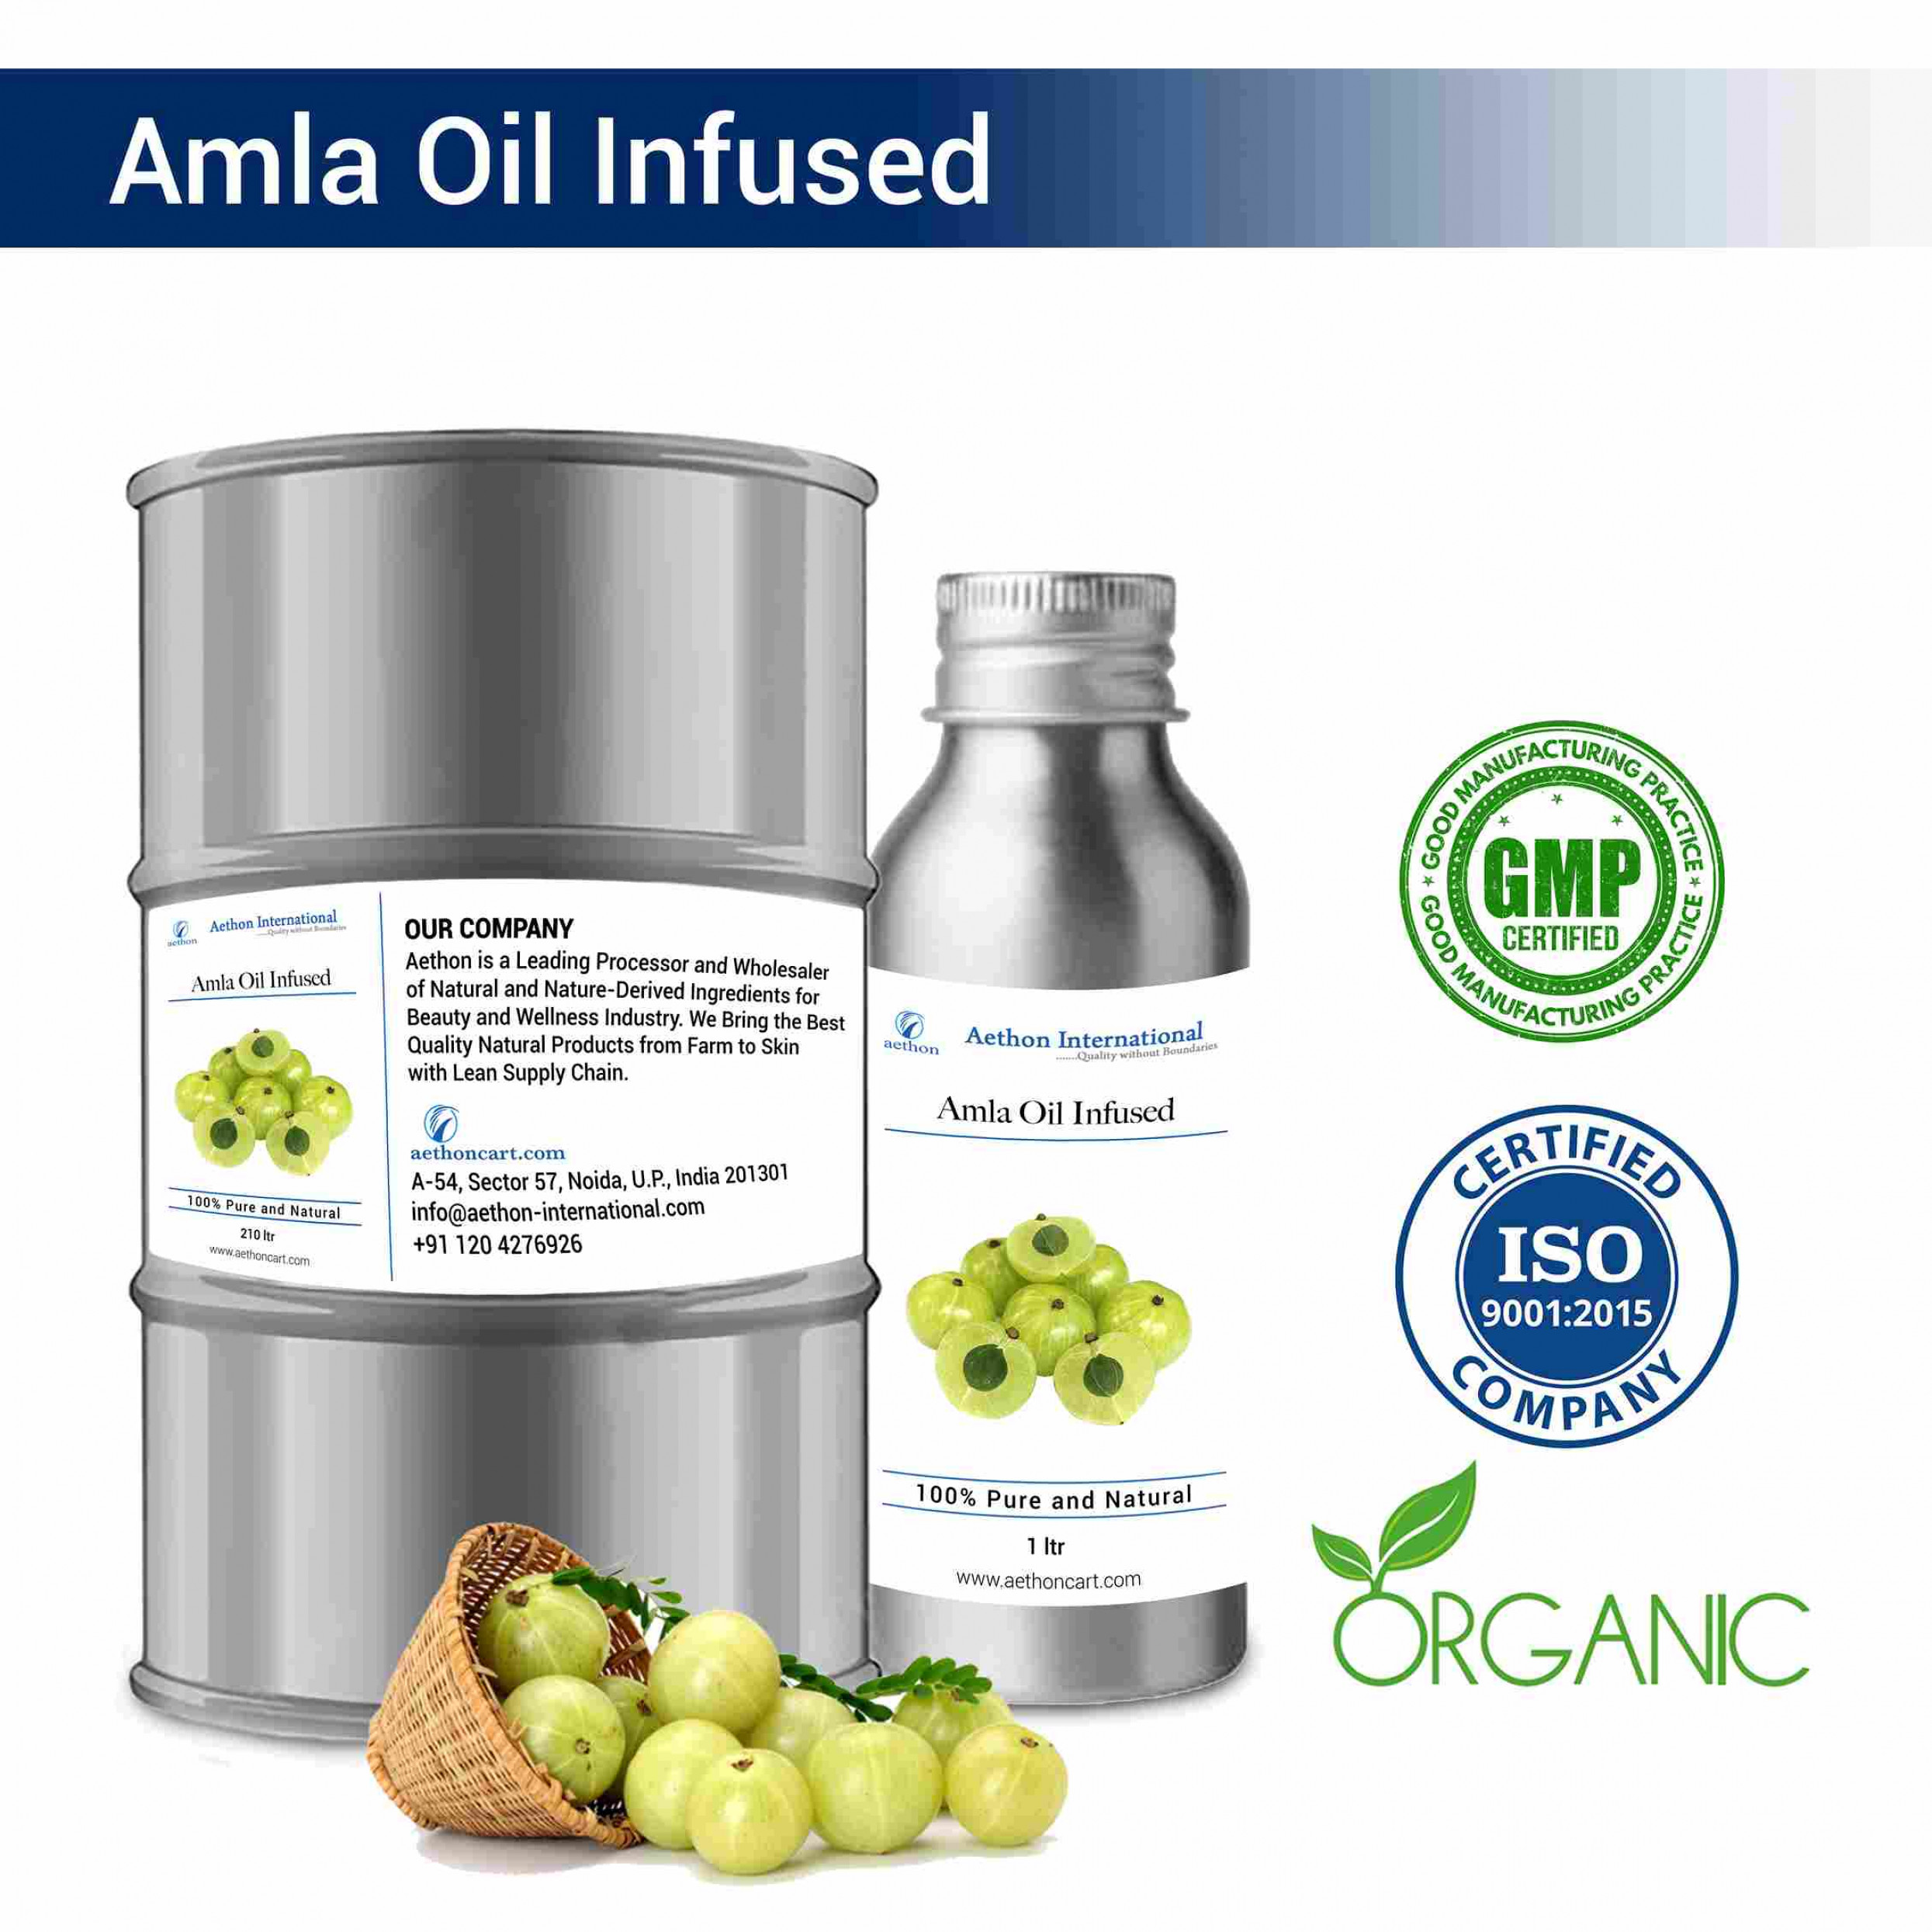 Amla Oil Infused